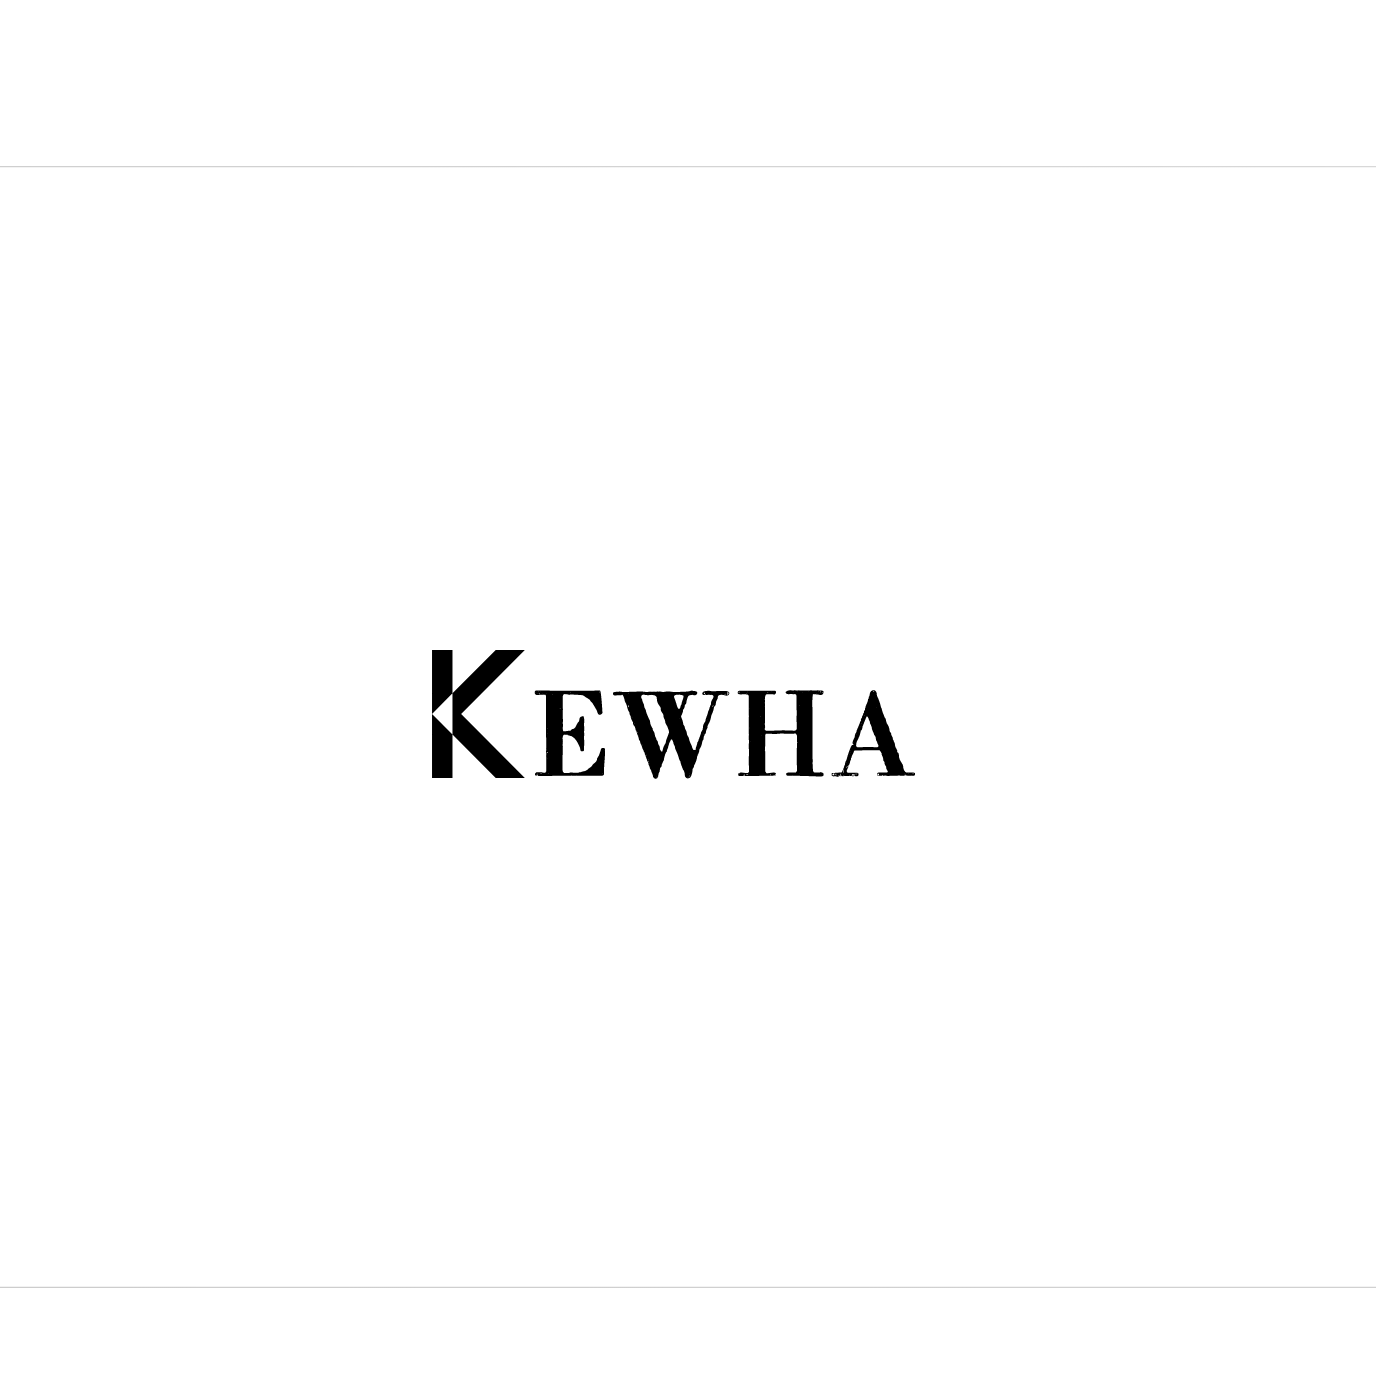 Kewha